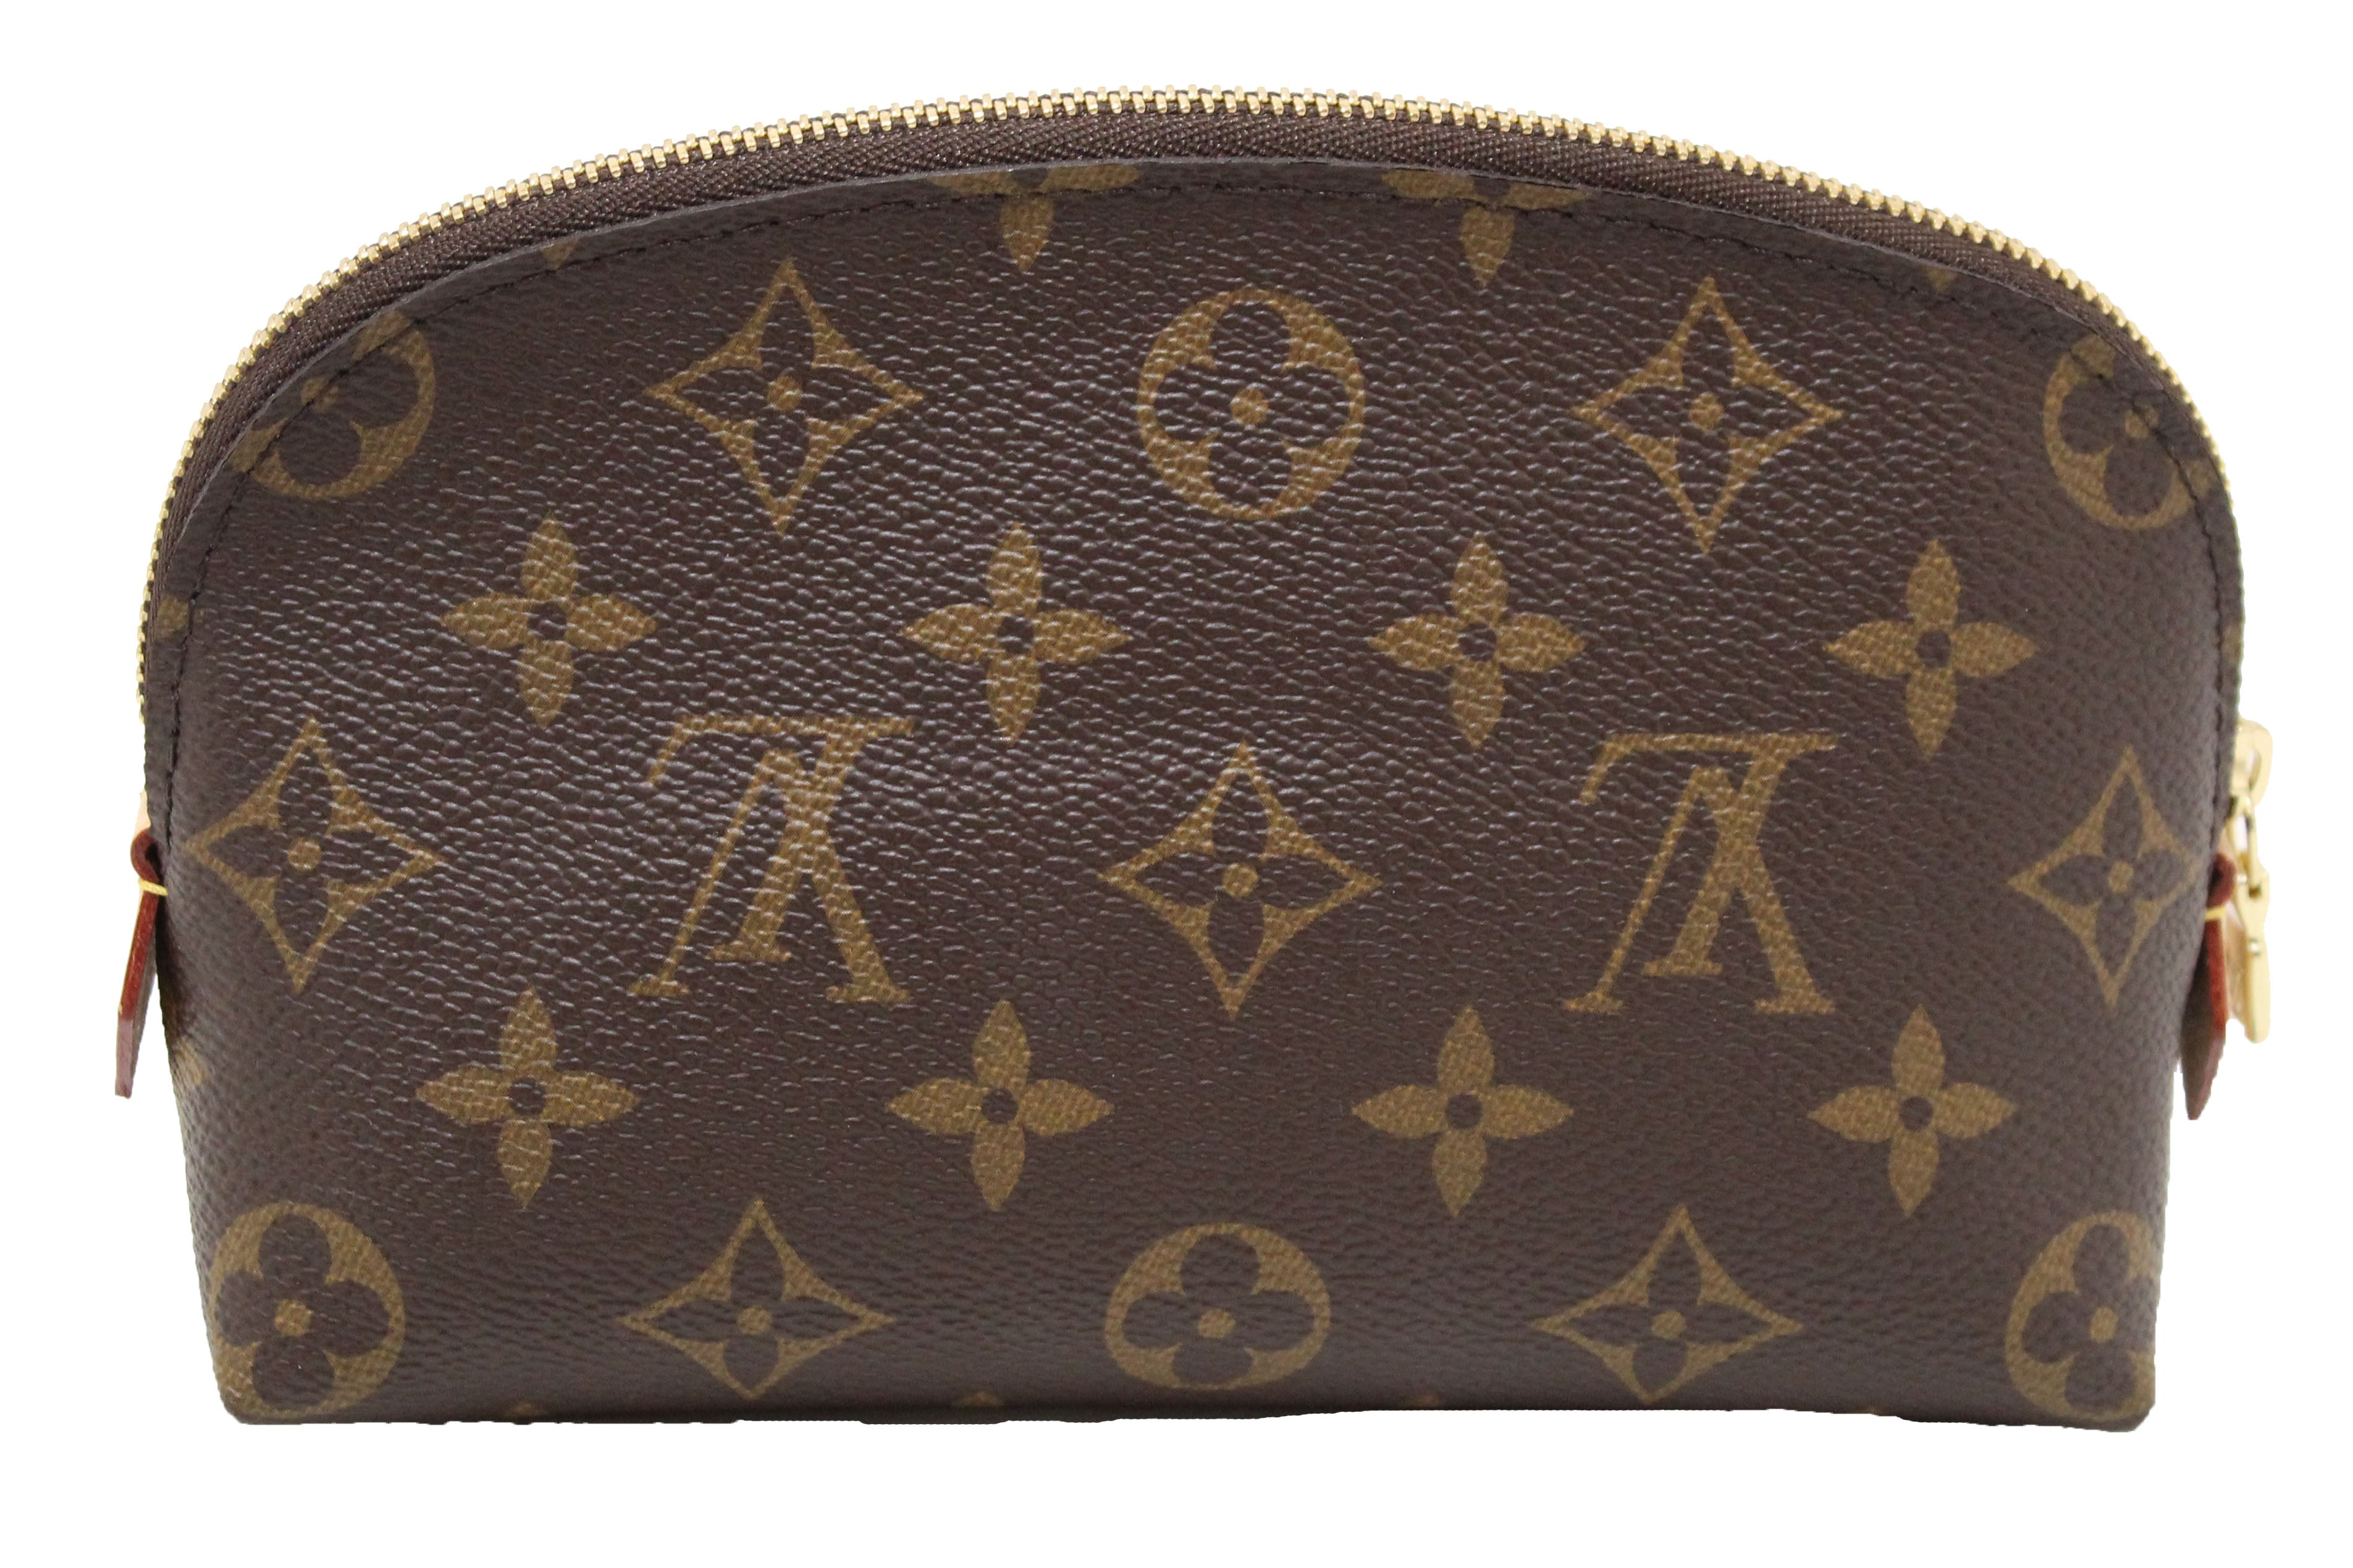 Louis Vuitton, Bags, Authentic Louis Vuitton Cosmetic Pouch